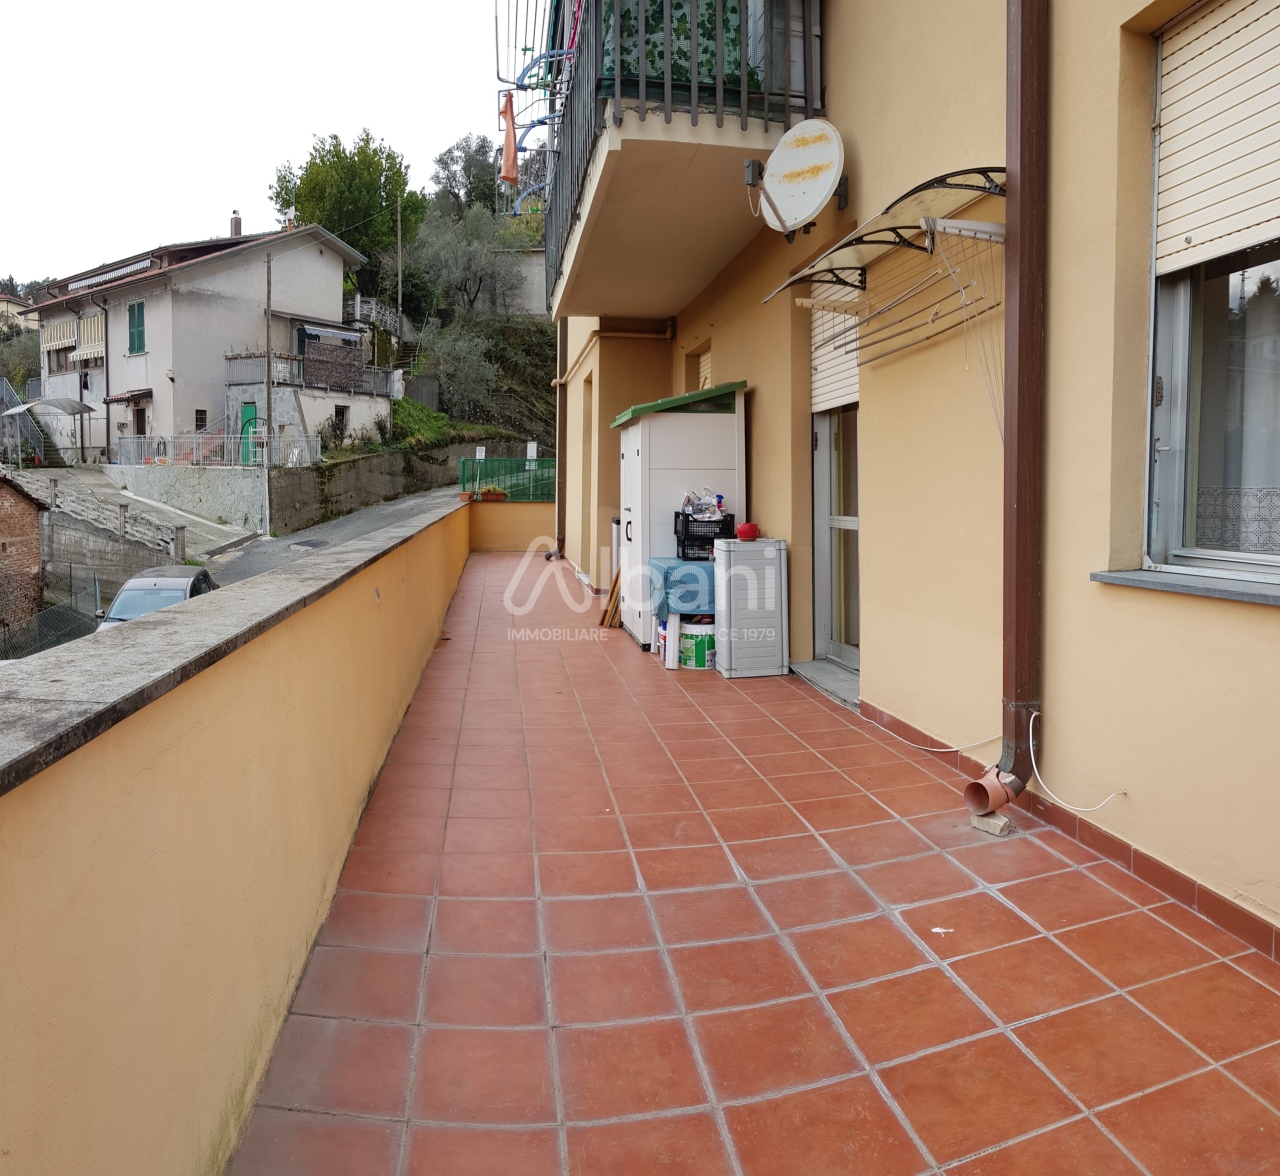 Appartamento in vendita a Vezzano Ligure, 4 locali, prezzo € 135.000 | PortaleAgenzieImmobiliari.it